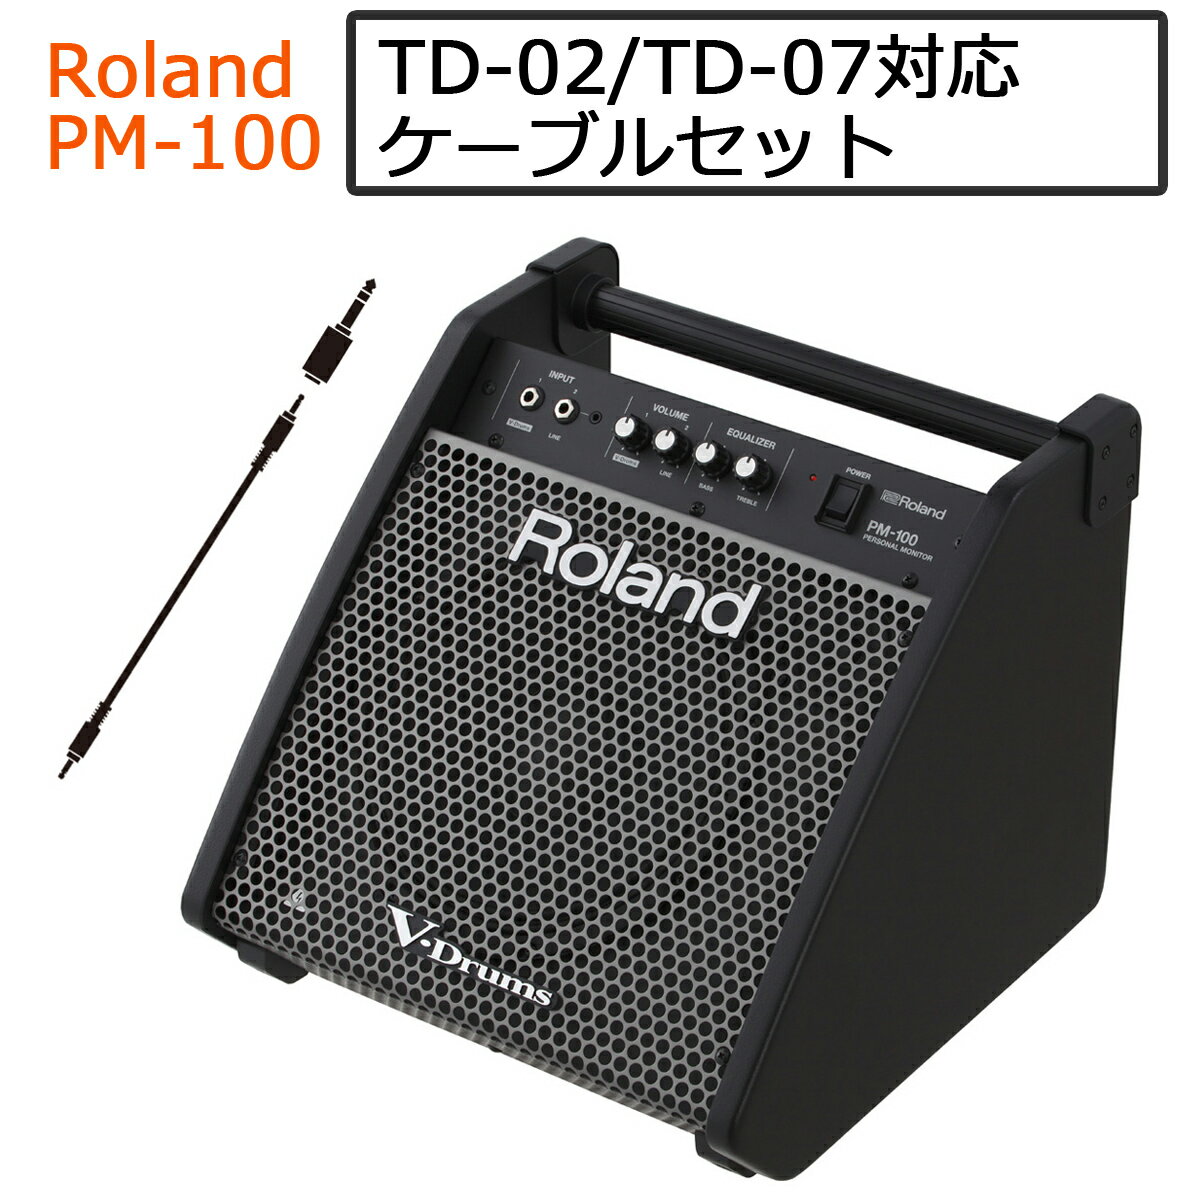 【あす楽対象商品】【TD-02対応】【TD-07対応】Roland / PM-100 電子ドラム用モニタースピーカー ステレオミニプラグ…